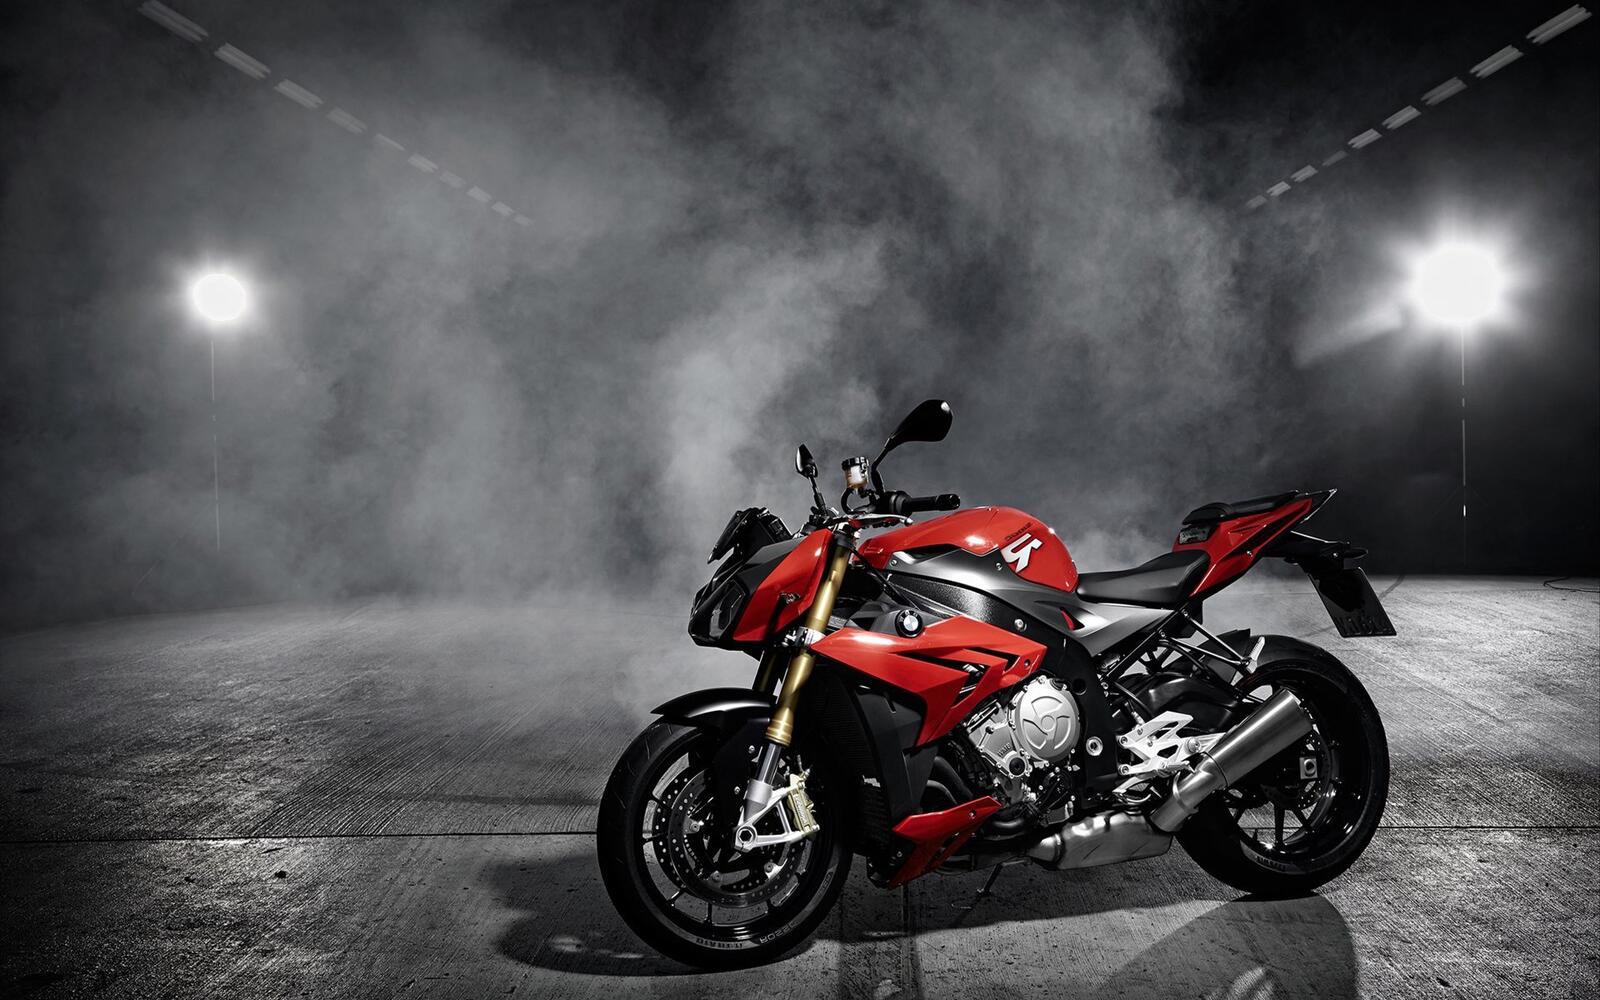 免费照片烟雾中的红色宝马摩托车